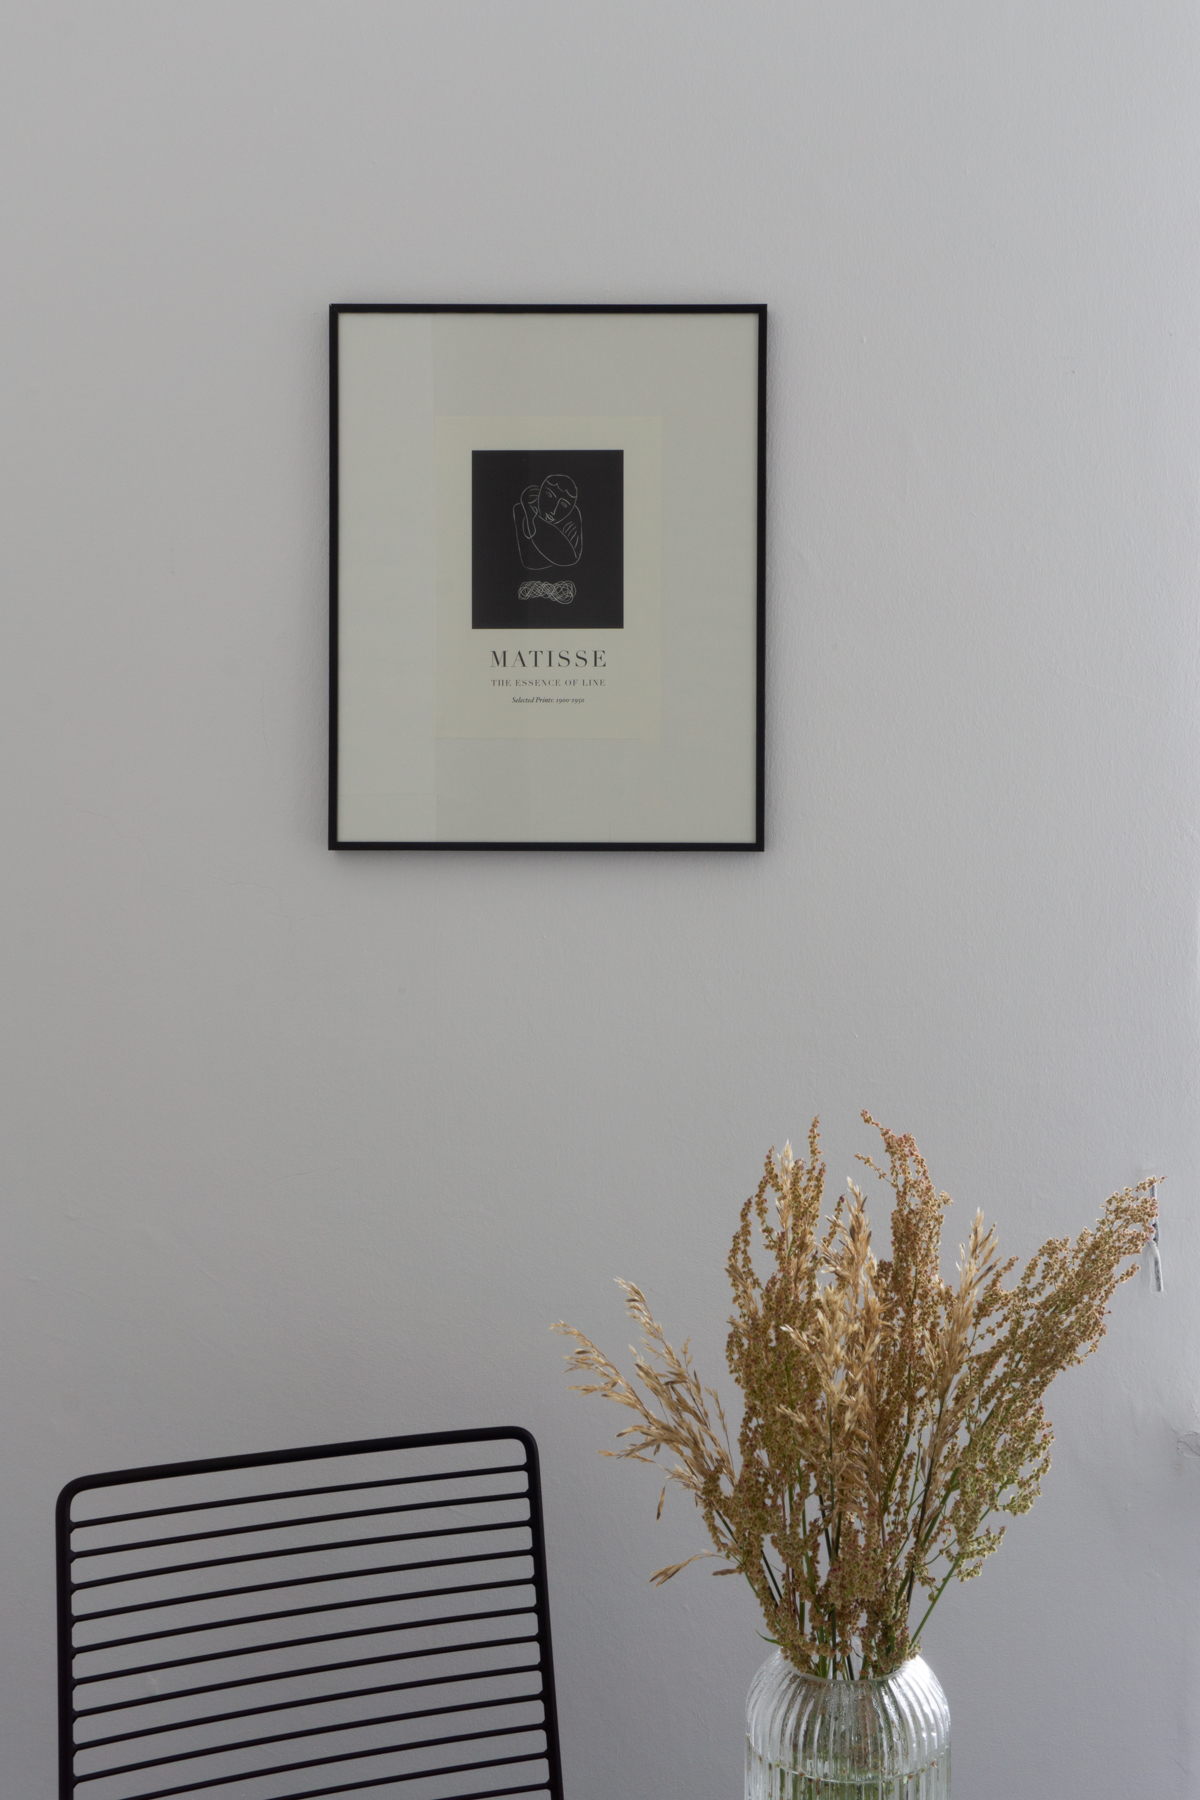 White and Beige Danish Inspired Kitchen | Matisse Artwork, Hay Hee Chair, Wheat Arrangement - RG Daily Blog, Interior Design